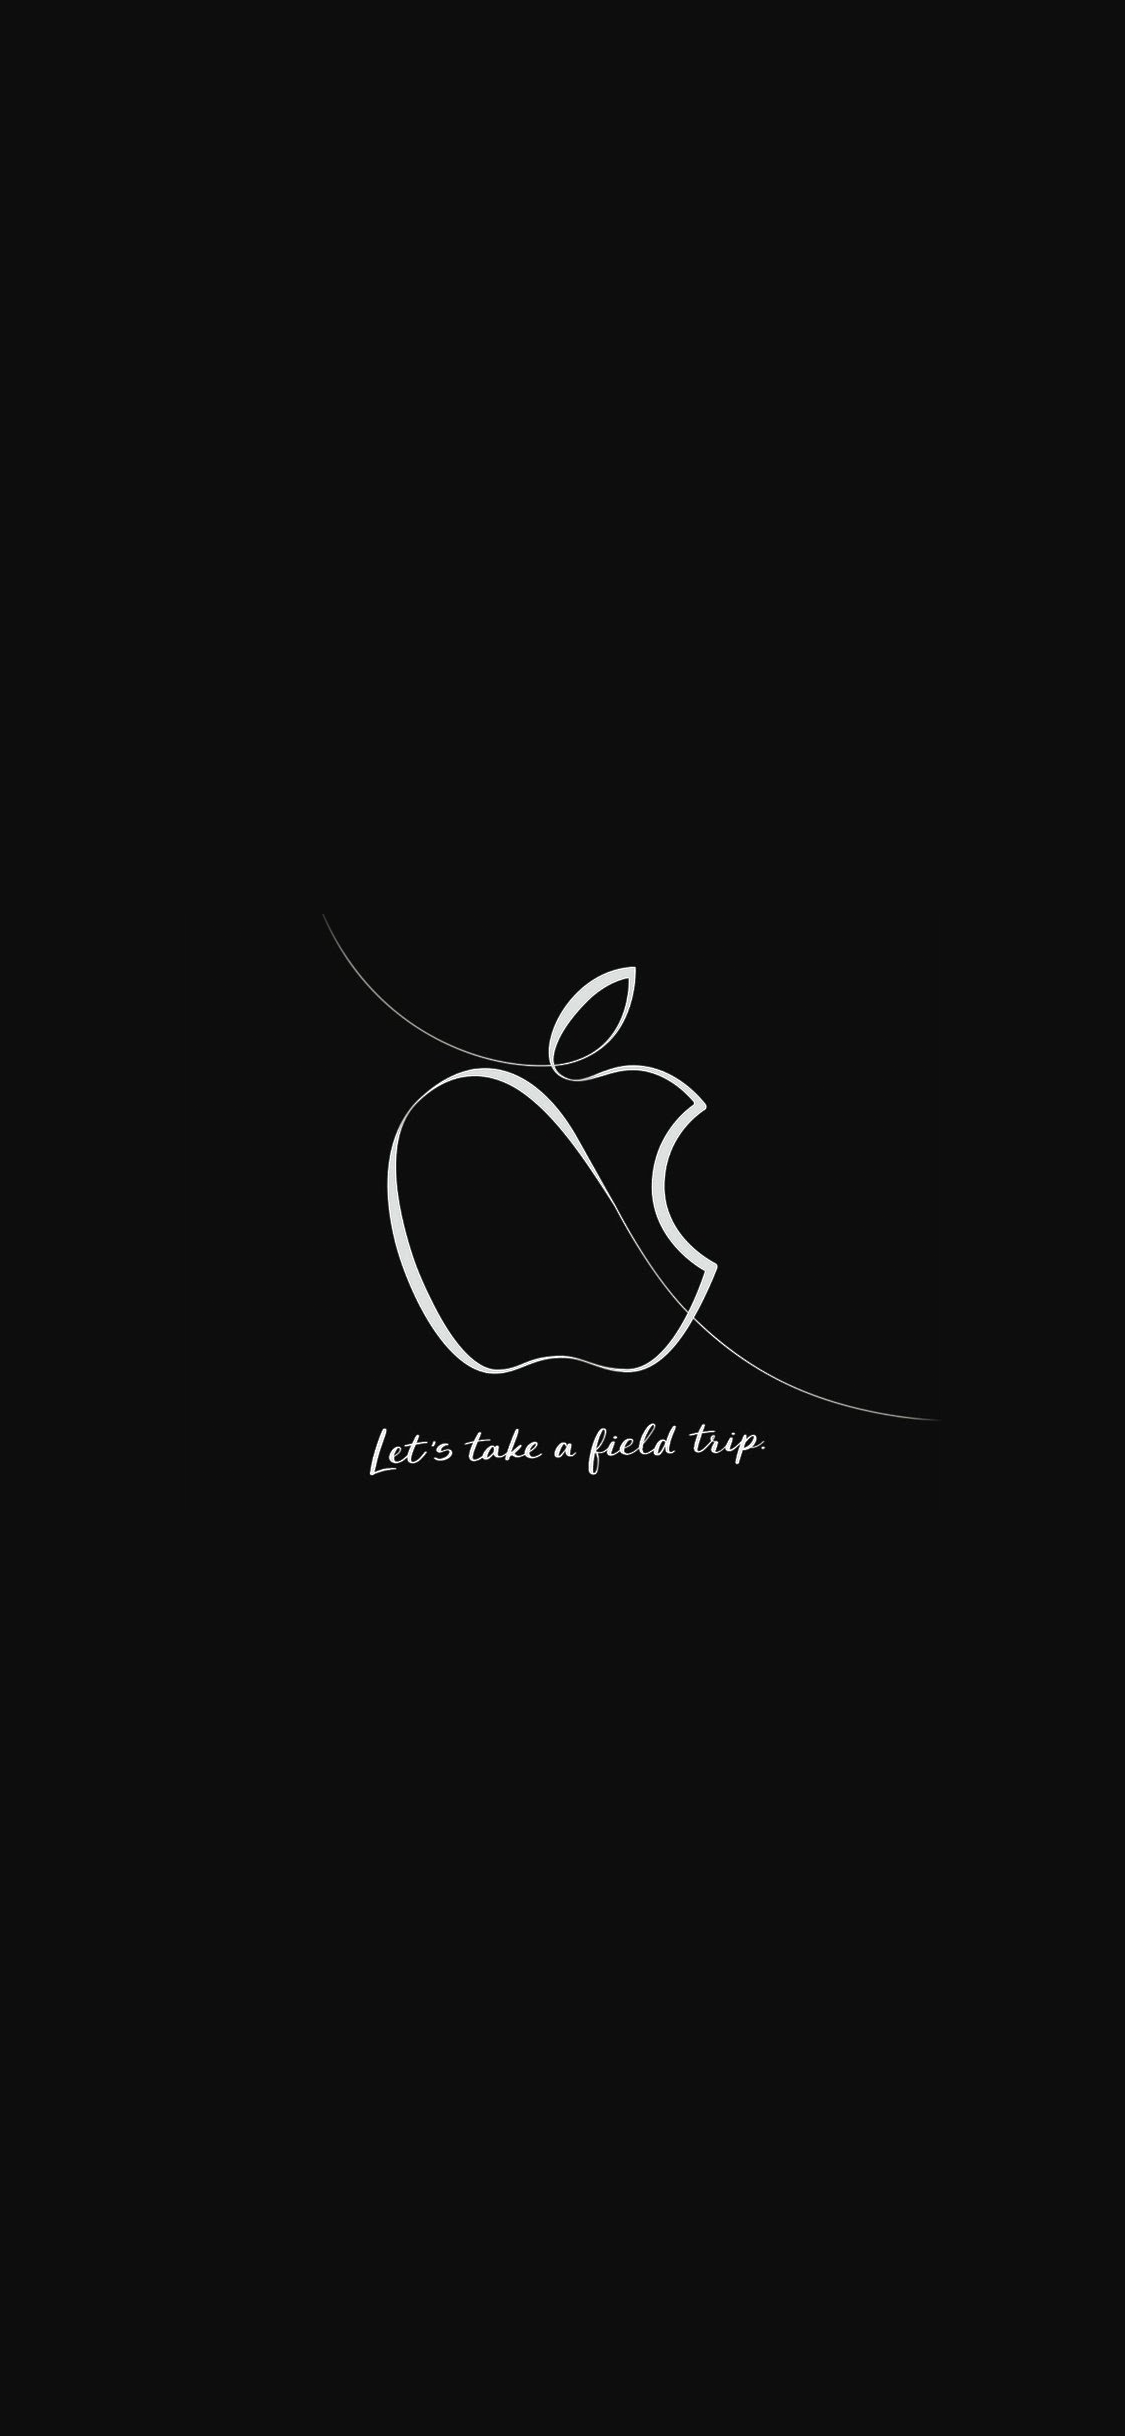 Appleのスペシャルイベント Let S Take A Field Trip のデザインをベースにした壁紙 Iphone Ipad Mac用 噂のappleフリークス